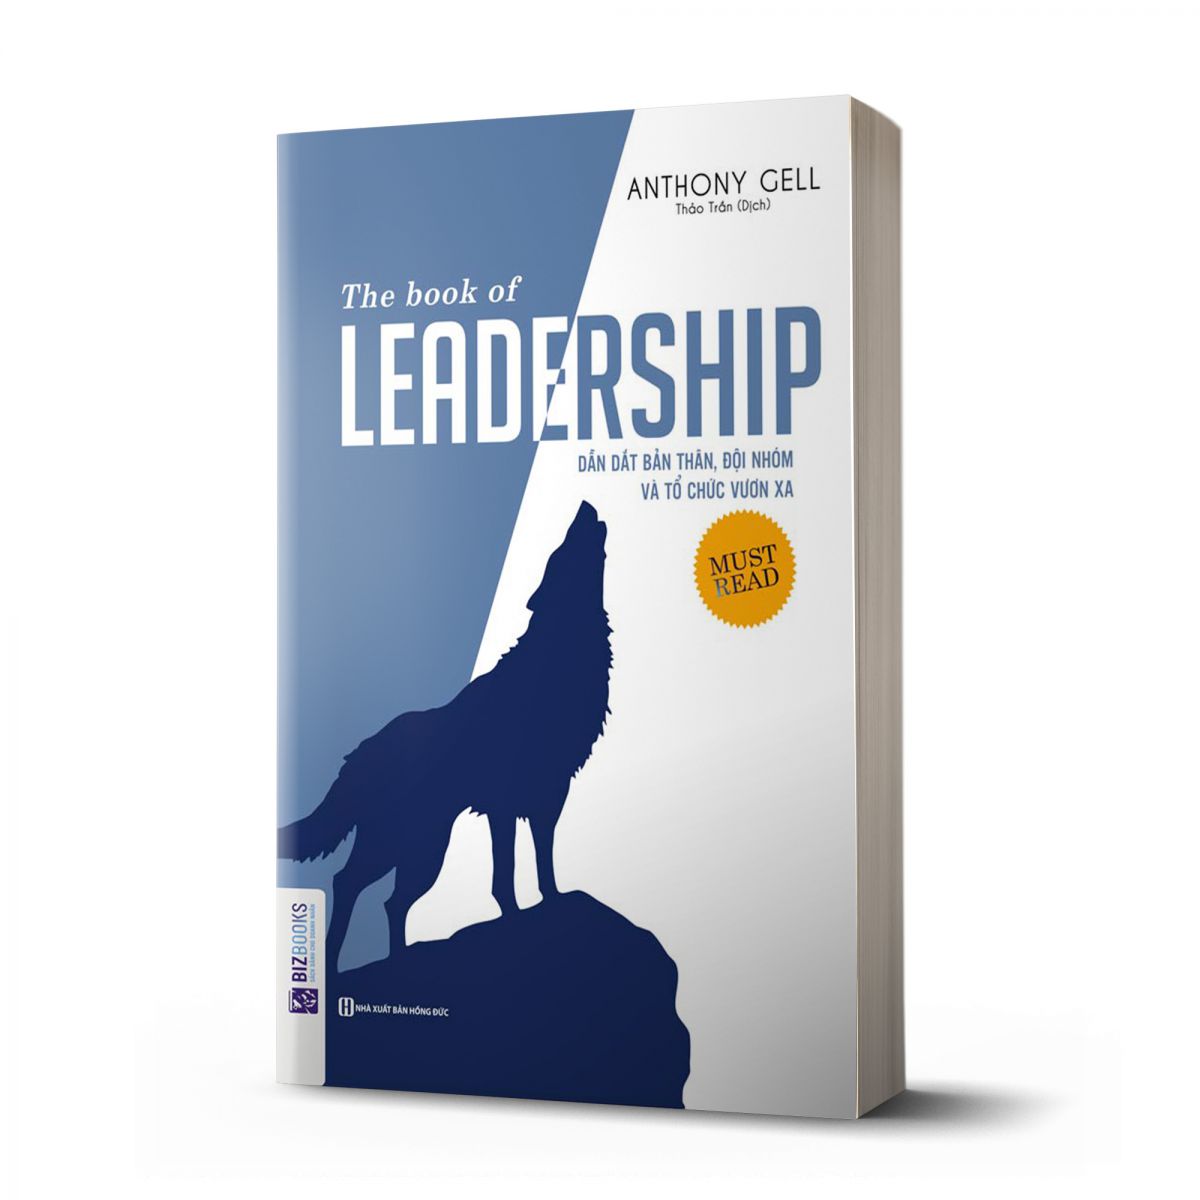 The book of leadership - Dẫn dắt bản thân, đội nhóm và tổ chức vươn xa 1 